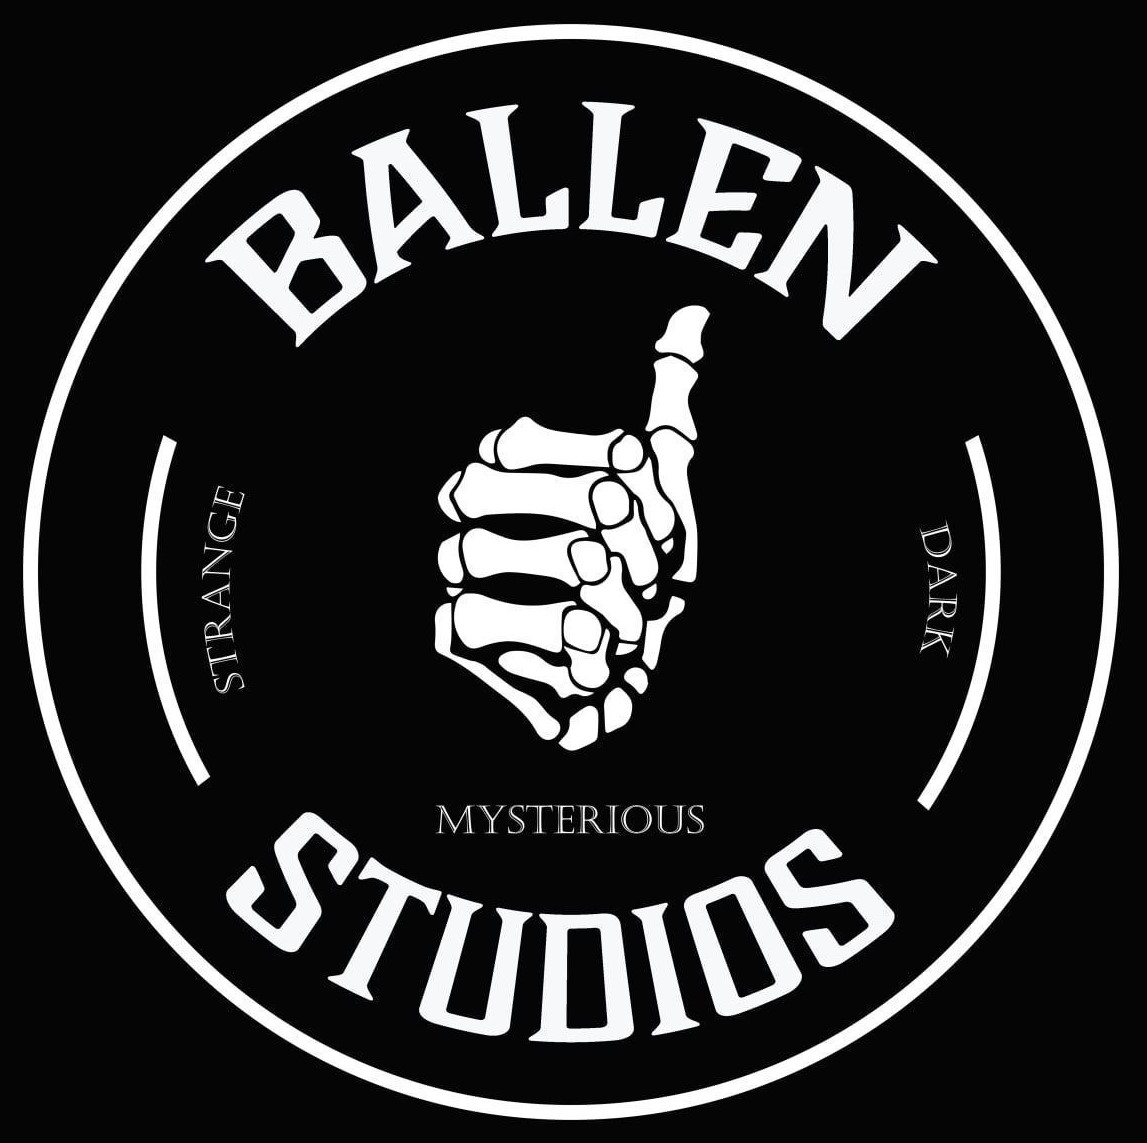 Ballen Studios